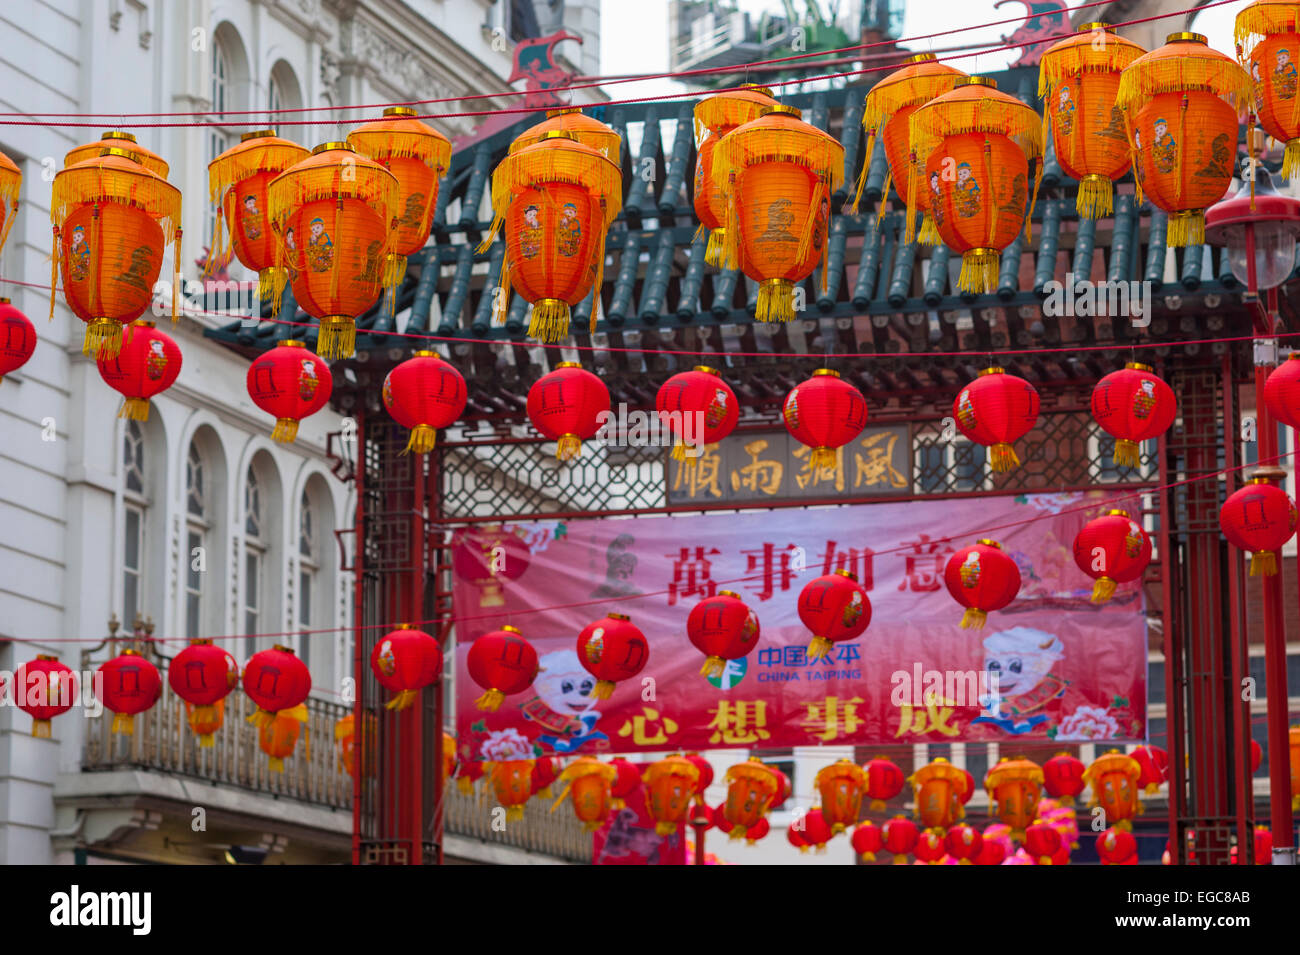 Lanternes dans China town Londres fror célébrations du nouvel an. Banque D'Images